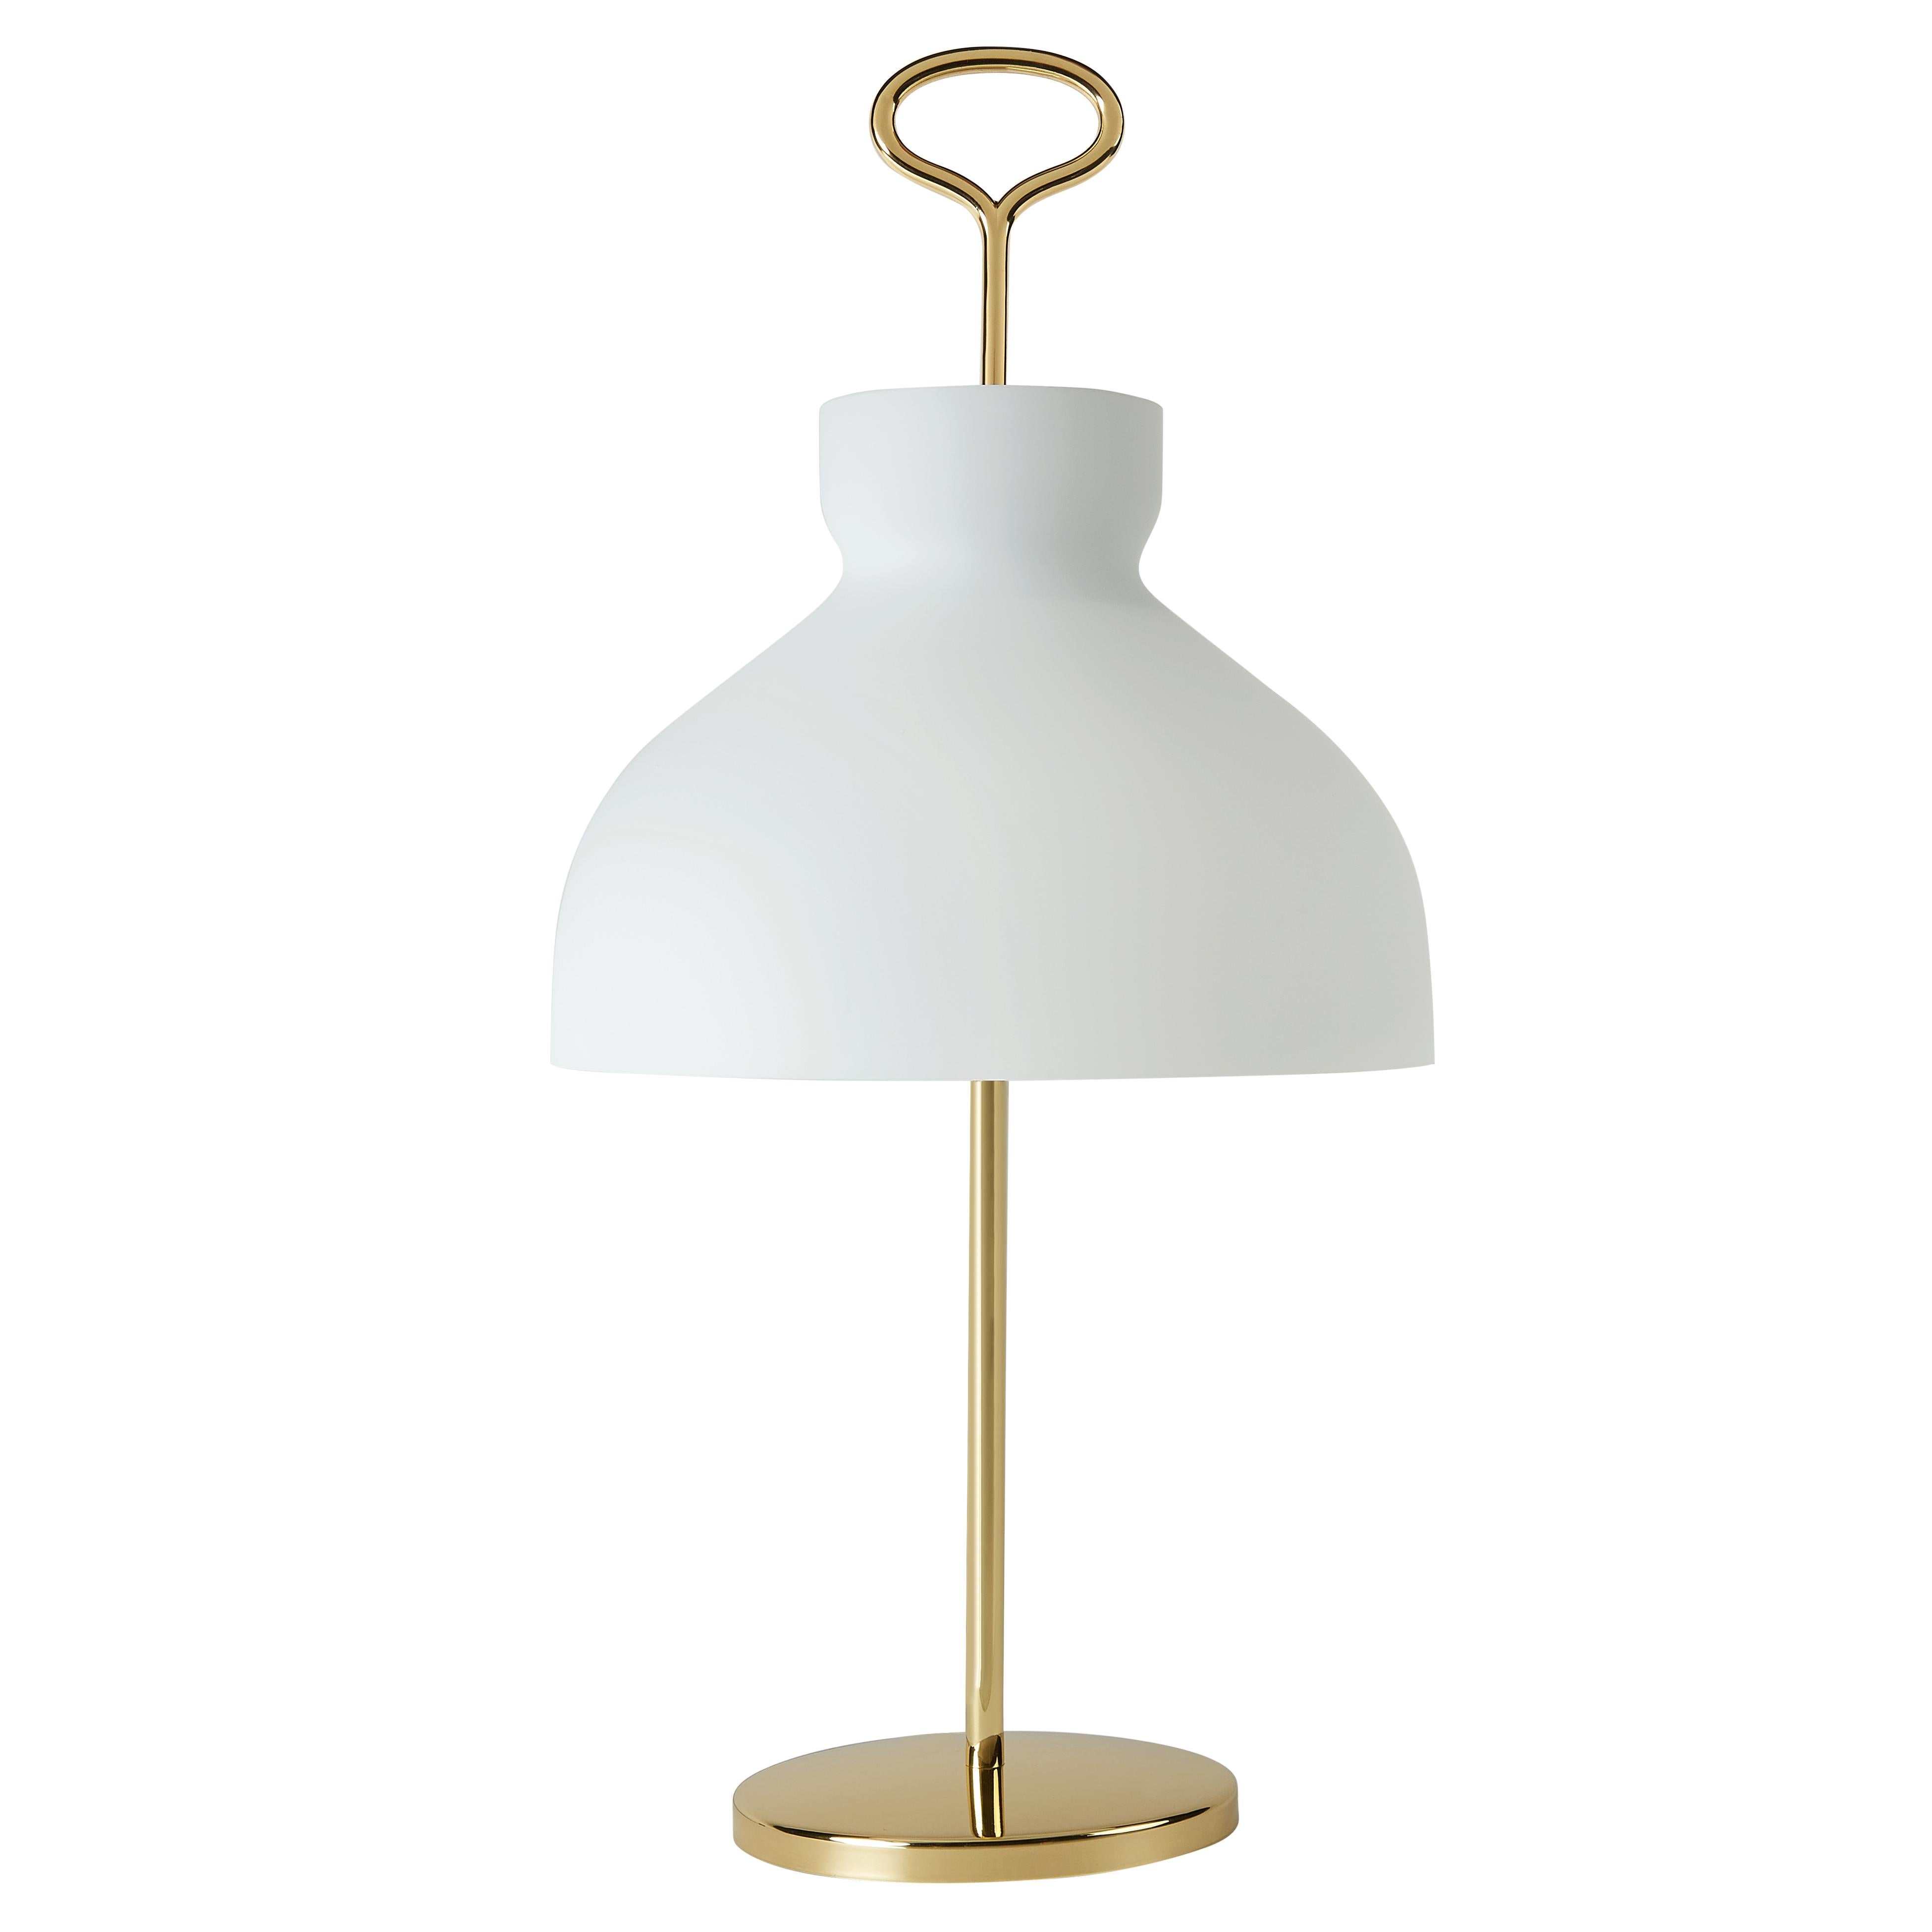 Large Ignazio Gardella 'Arenzano' Table Lamp in Chrome and Glass for Tato Italia For Sale 1